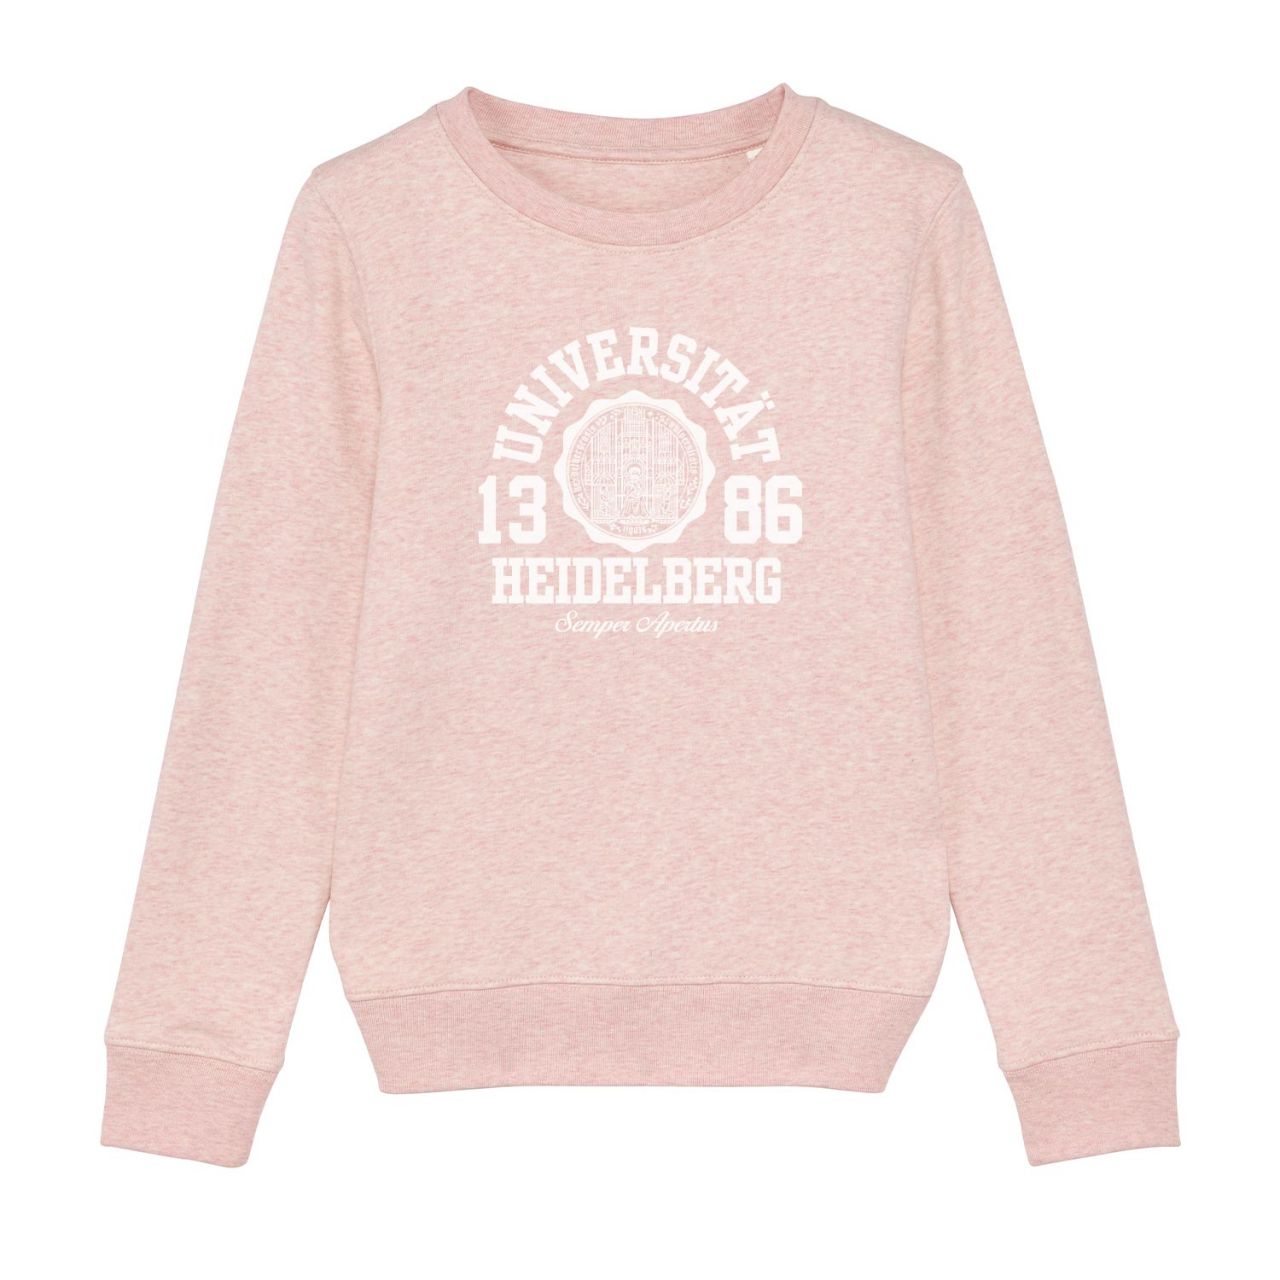 Kids Organic Sweatshirt, cream heather pink, marshall